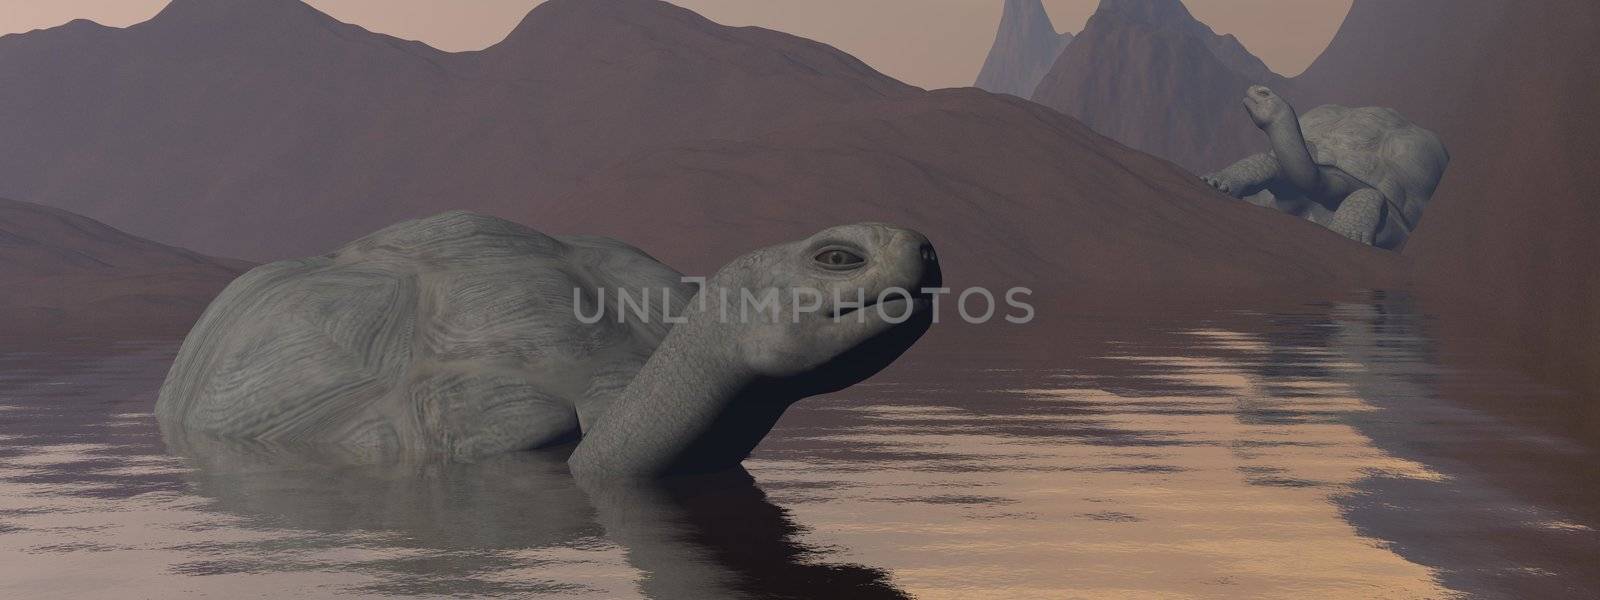 Galapagos tortoises in water - 3D render by Elenaphotos21